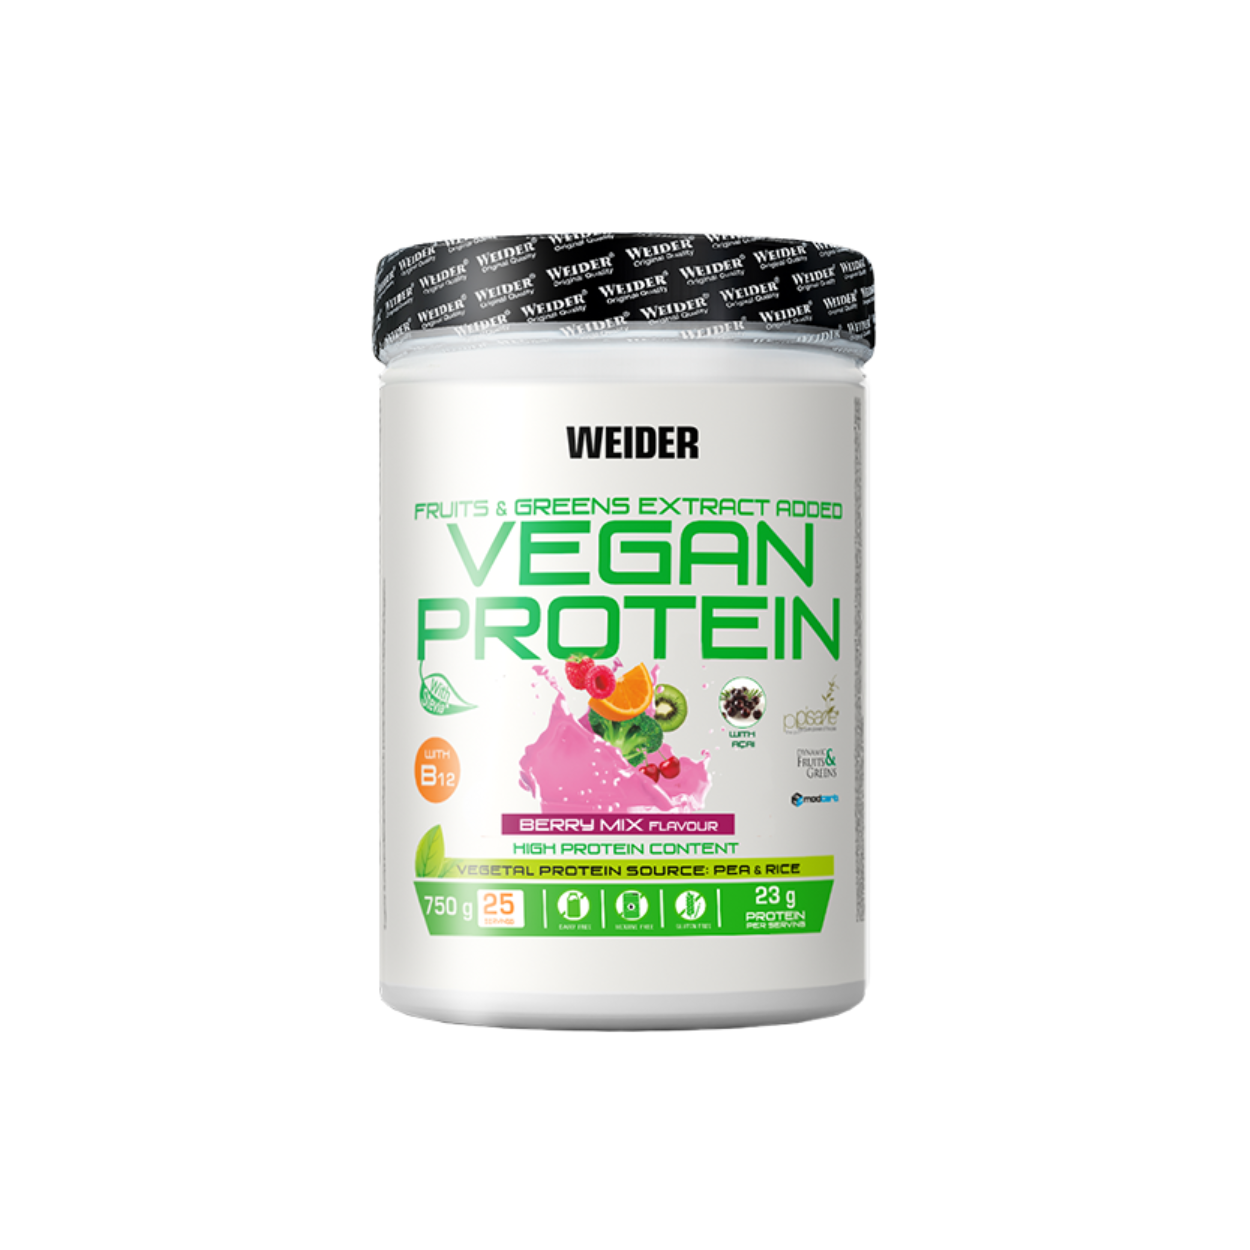 Weider Vegan Protein Berry Mix (750g Dose)